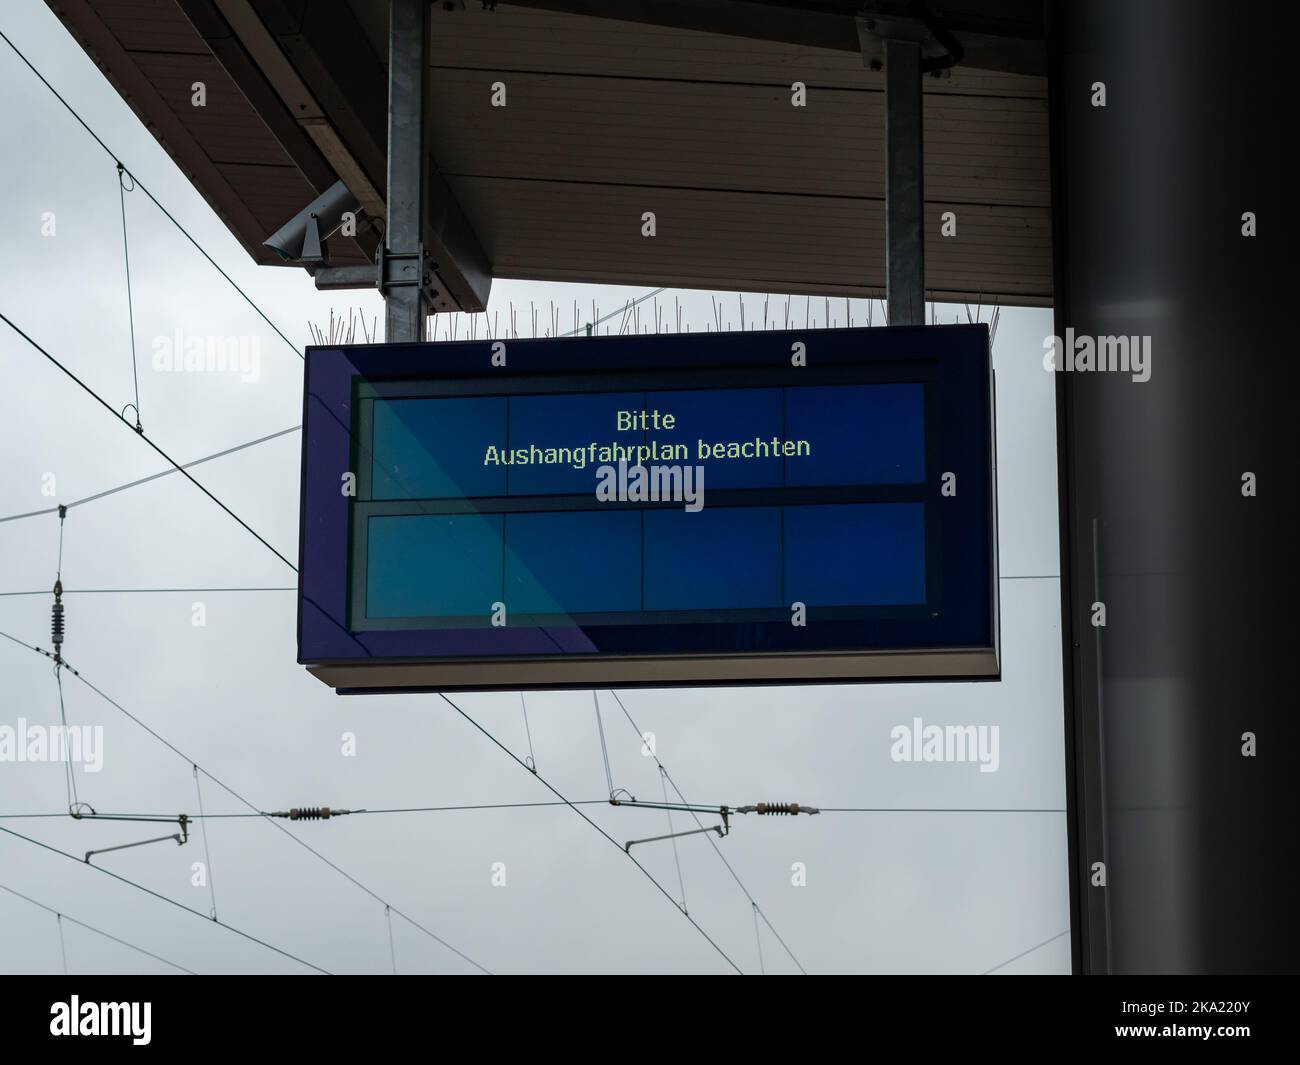 Bitte Auschangfahrplan beachten (auf den stoppspezifischen Fahrplan achten) Informationen auf dem Abflugbrett. Bahnstatus der Deutschen Bahn. Stockfoto